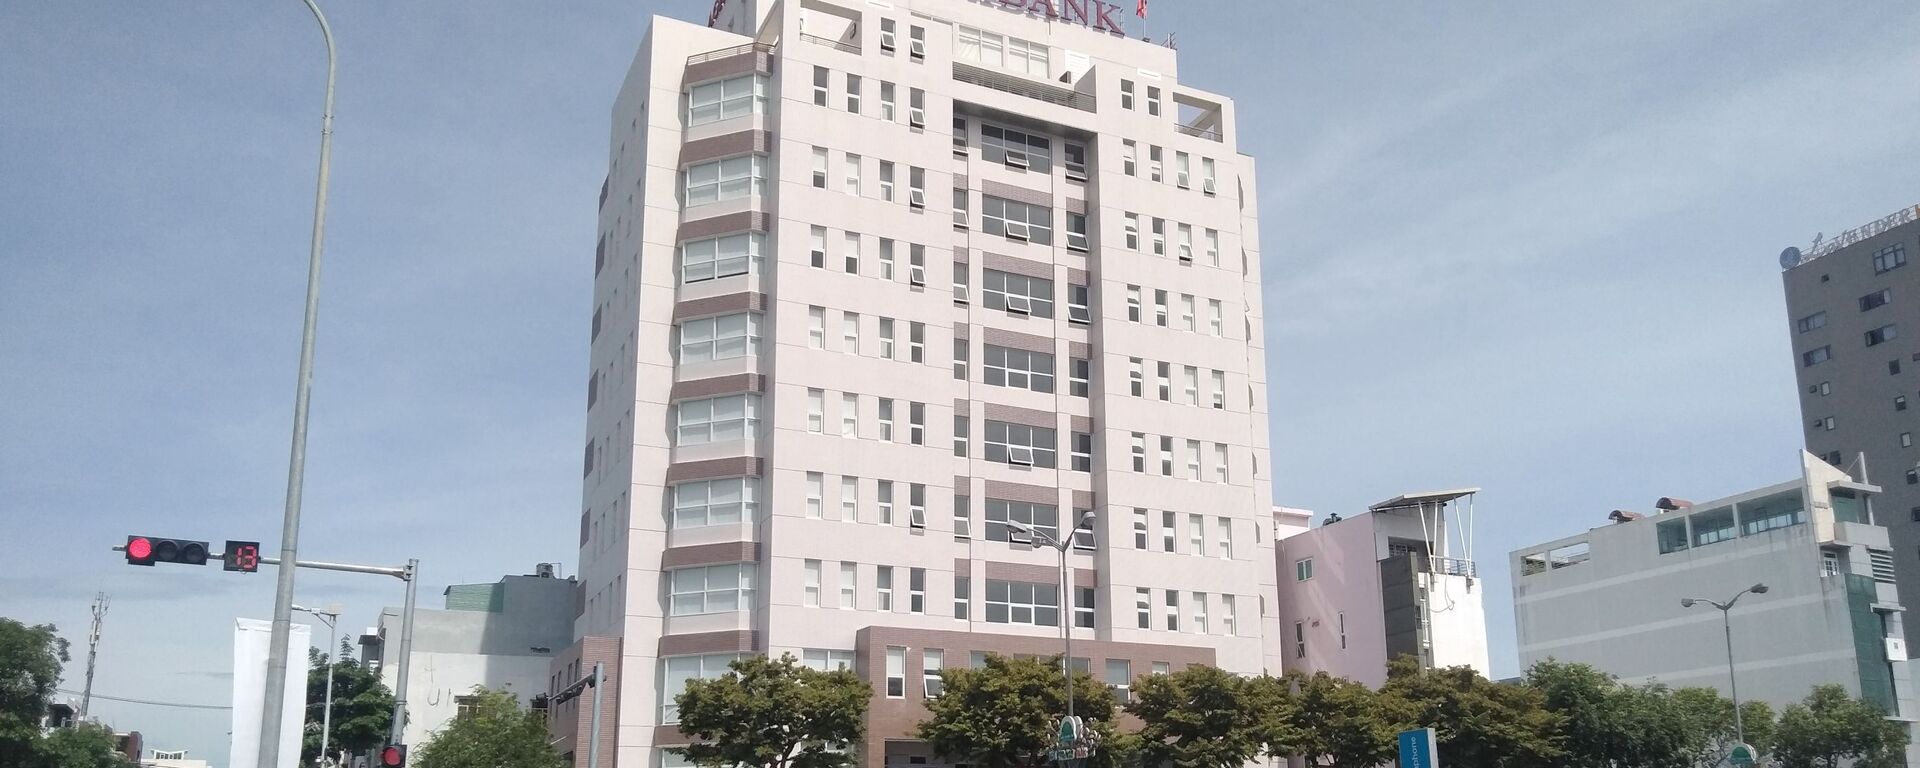 Tòa nhà văn phòng trung tâm Agribank. - Sputnik Việt Nam, 1920, 14.06.2021